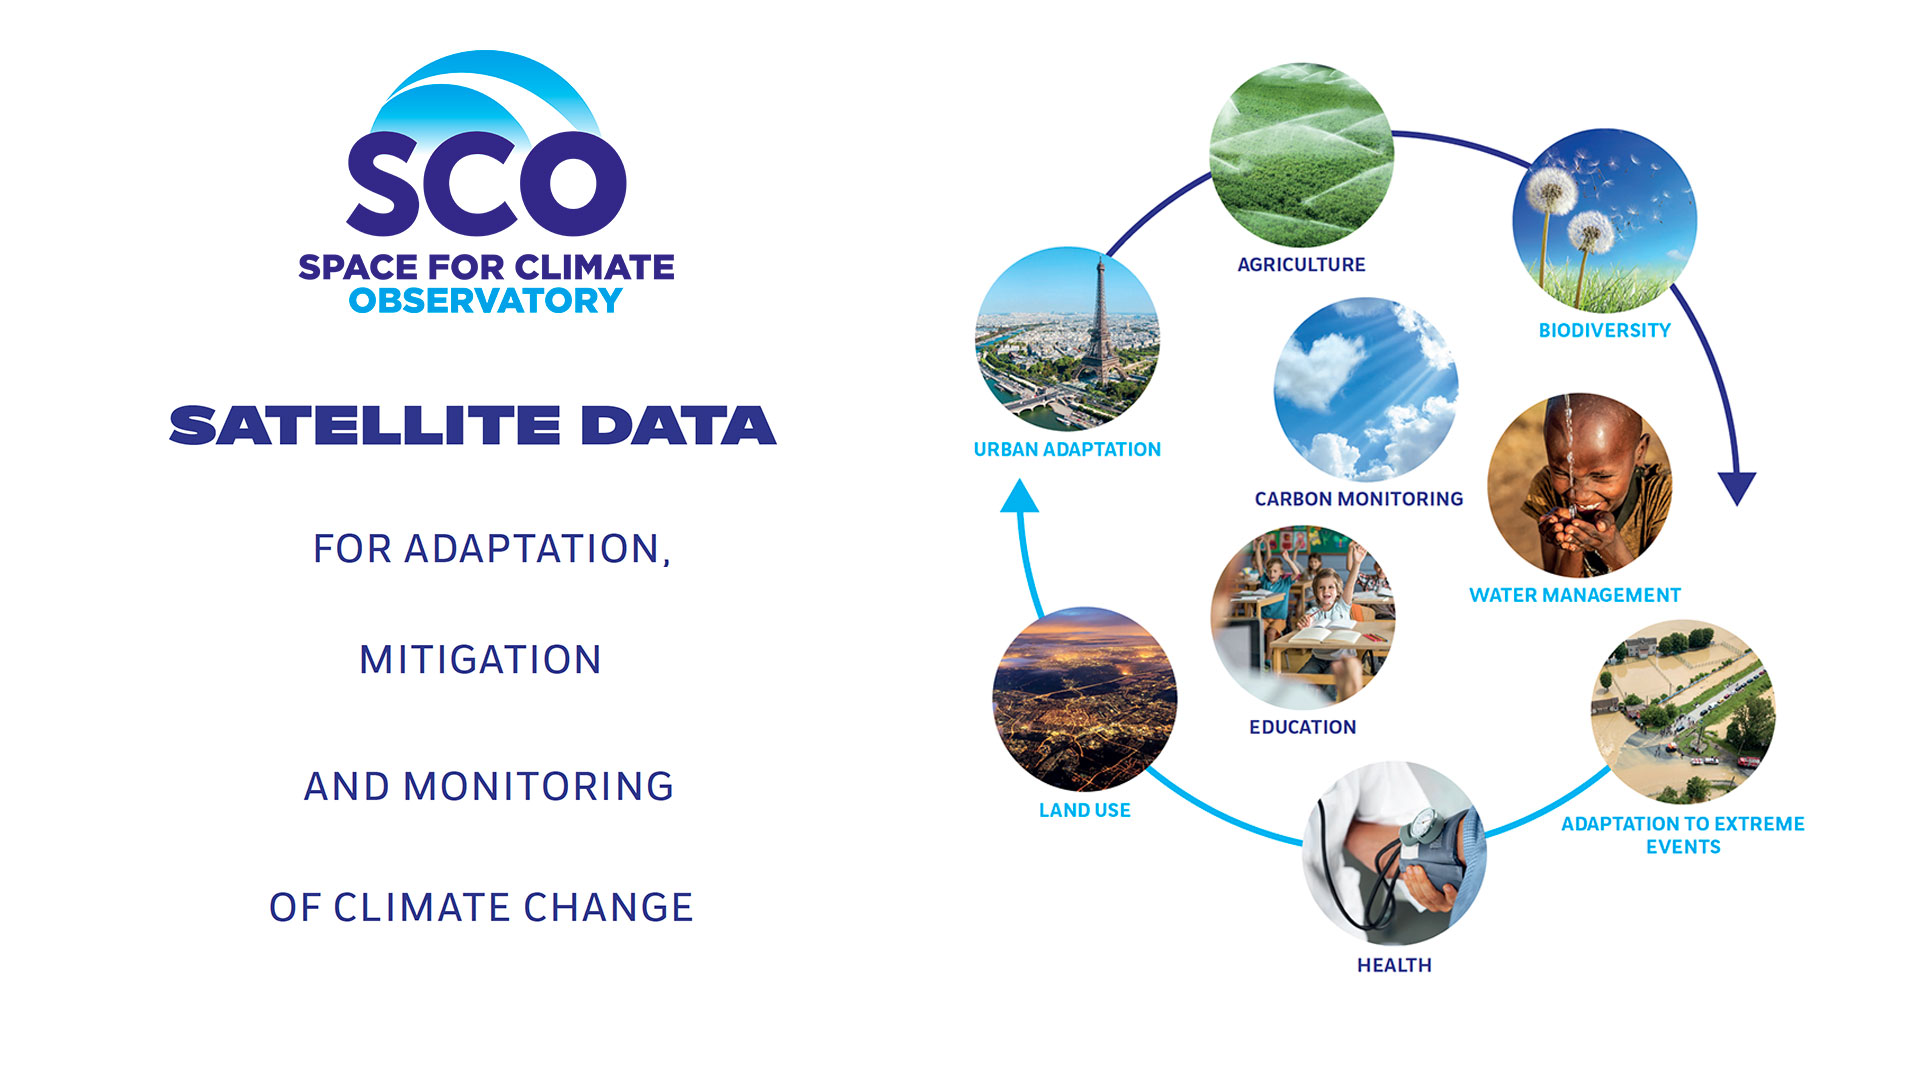 Le SCO, une initiative internationale pour développer des outils d'adaptation aux impacts du changement climatique grâce aux données spatiales.